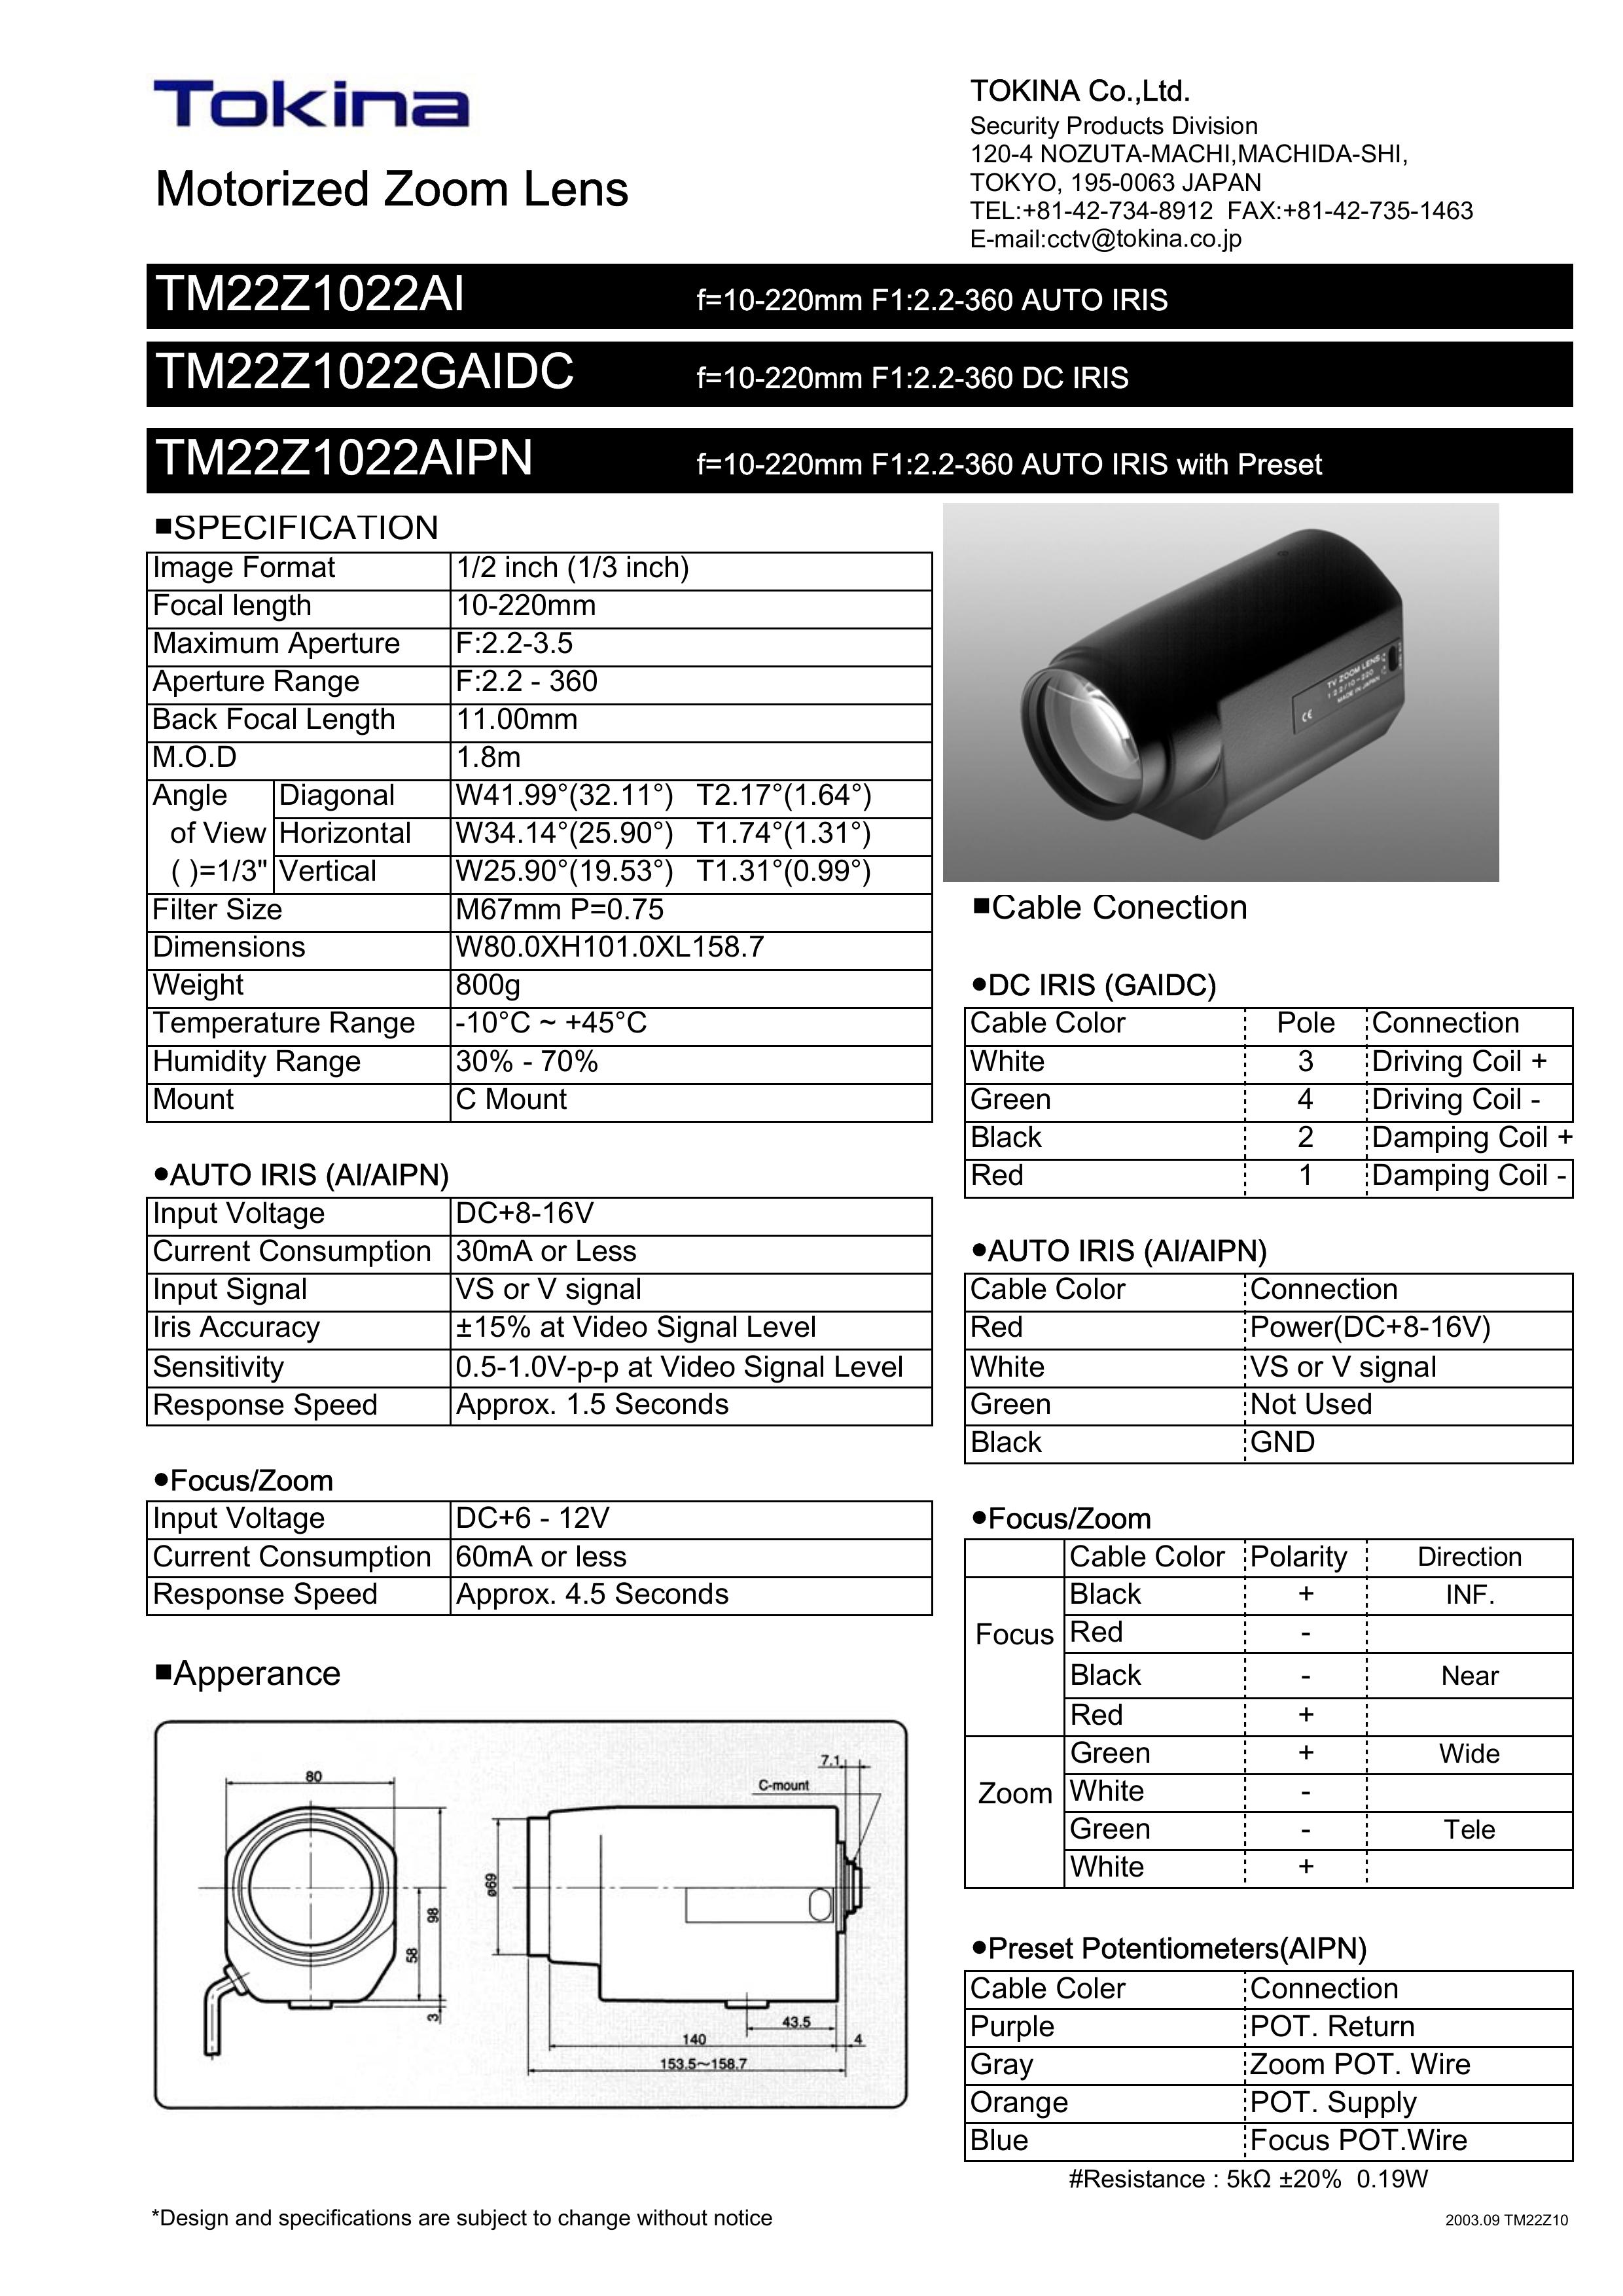 Tokina TM22Z1022AIPN Camera Lens User Manual